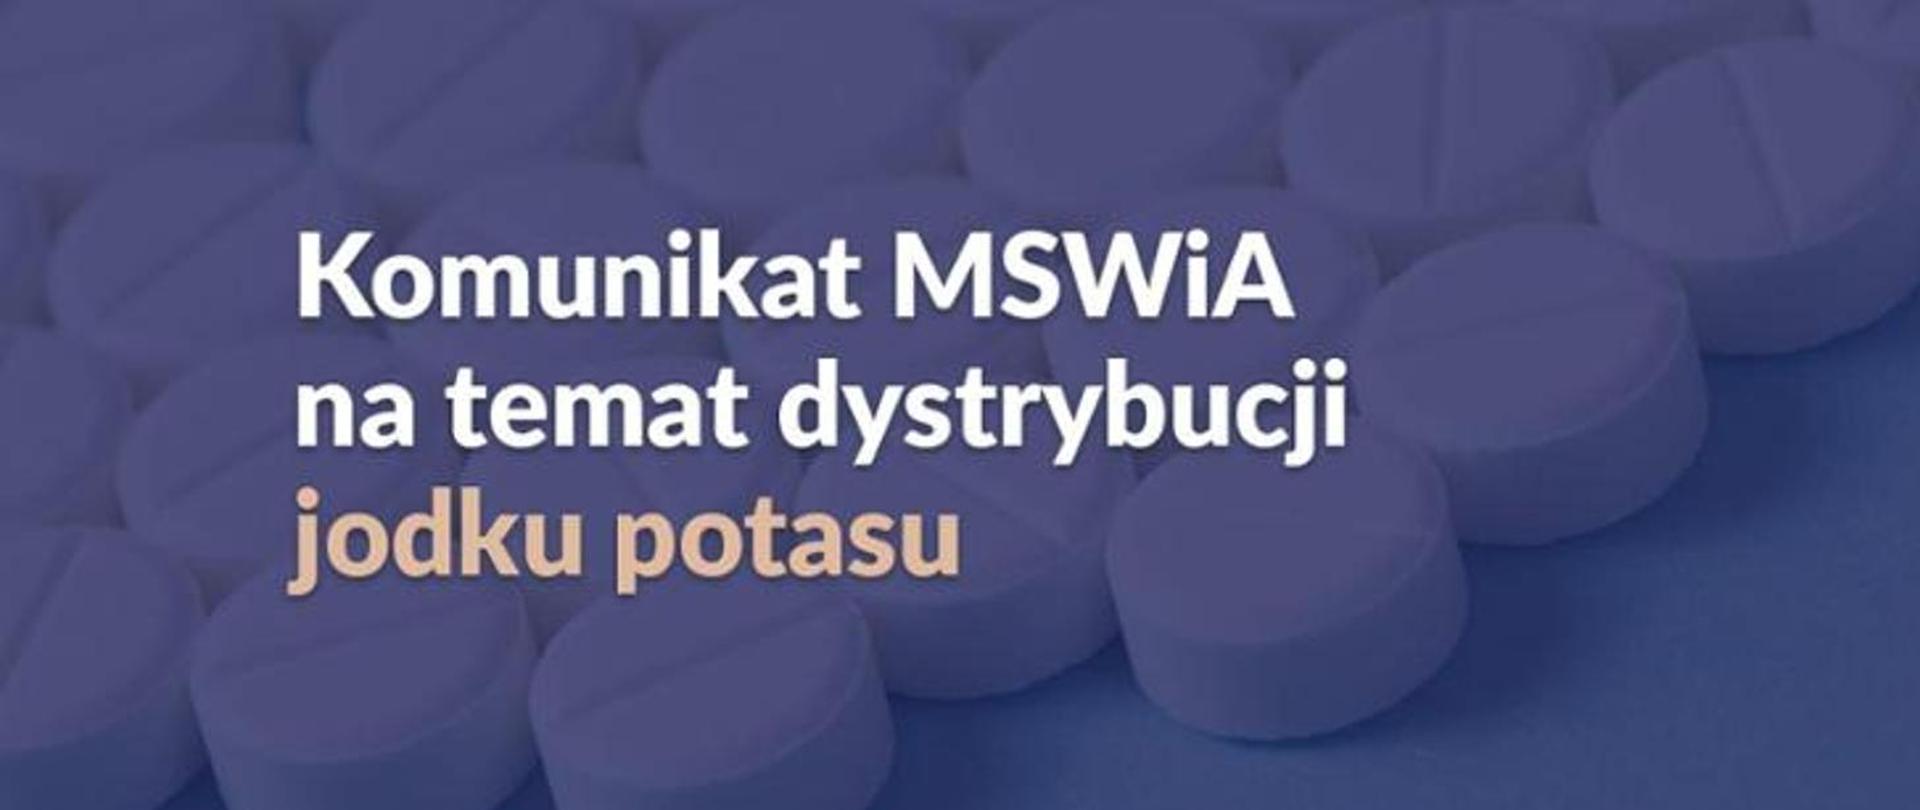 Baner przedstawia napis Komunikat MSWiA na temat dystrybucji jodku potasu